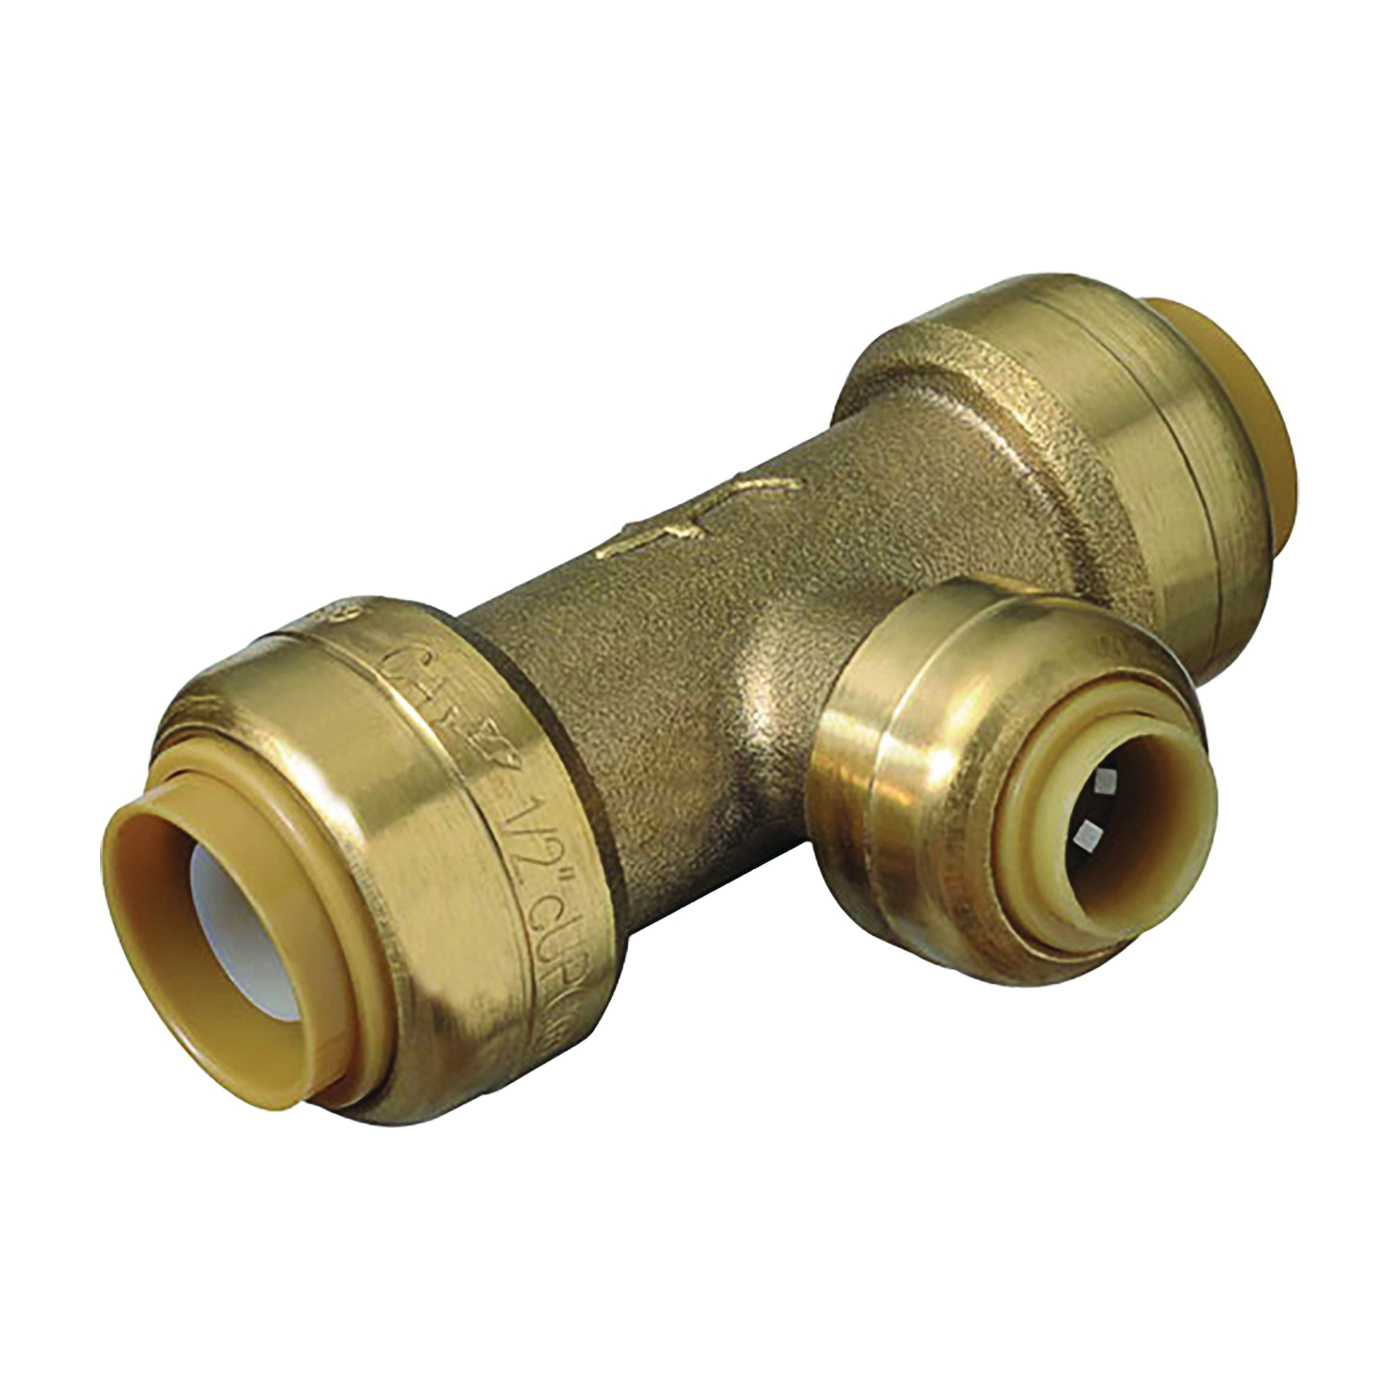 U359LFA Pipe Tee, 1/2 x 1/4 in, Push-Fit, DZR Brass, 200 psi Pressure